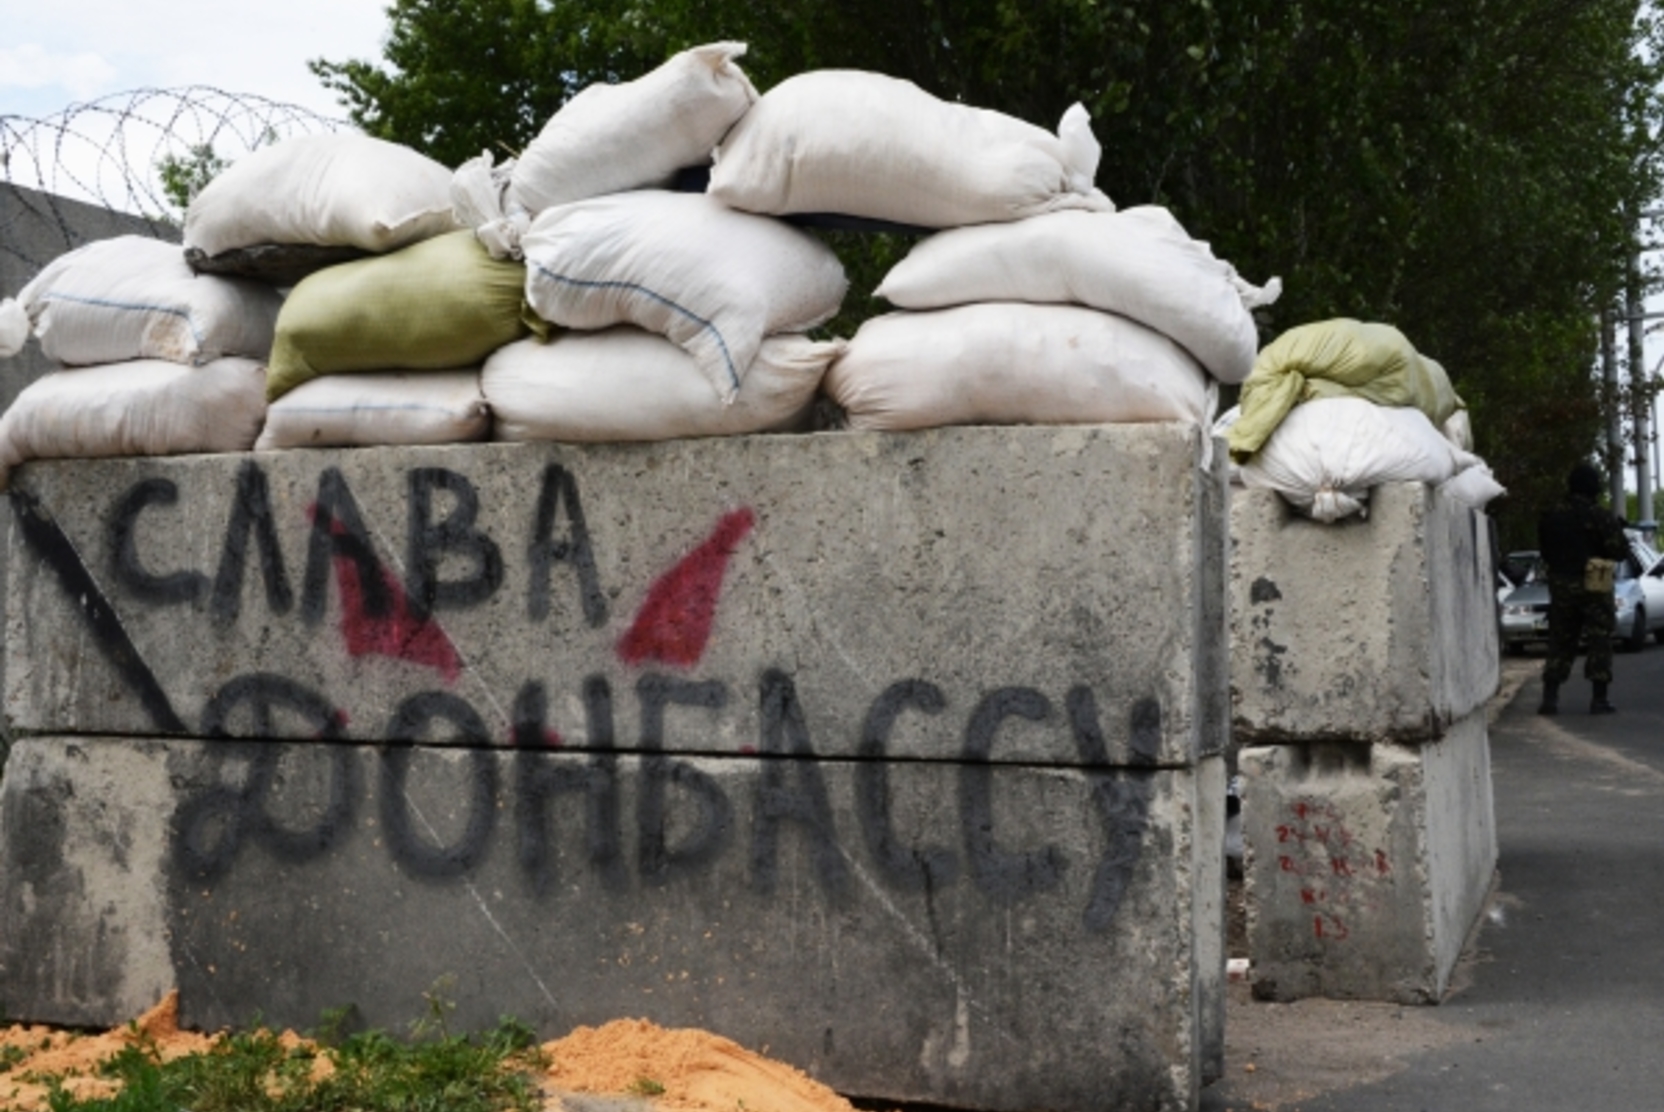 Украинский политик назвала войну в Донбассе преступлением «по морали и по закону»